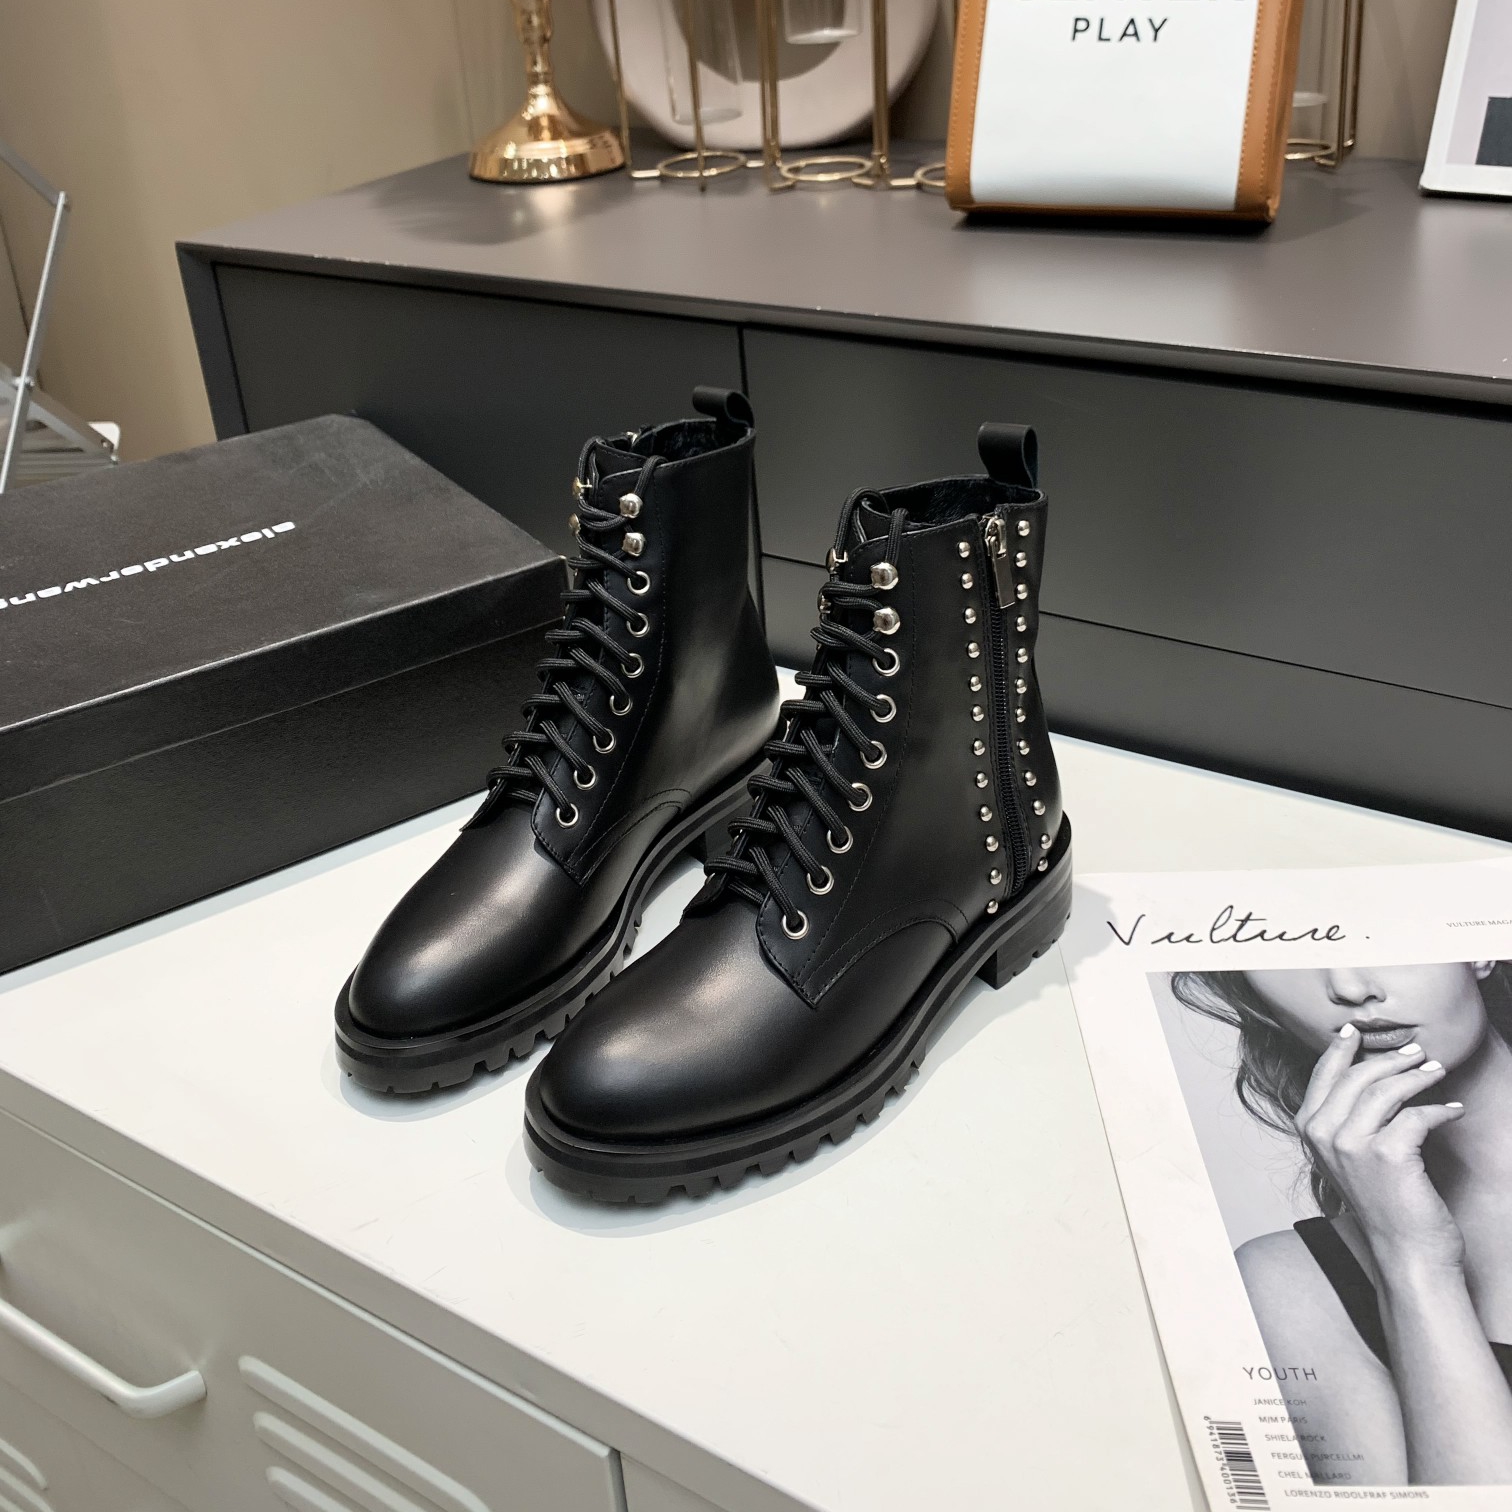 أزياء ألكساندر وانغ الفاخرة ذات العلامة التجارية الشهيرة في أسبوع الموضة في ميلانو للأحذية النسائية ذات العلامات التجارية وأحذية المصممين المزيفة أيضًا ذات الكعب العالي من العلامات التجارية